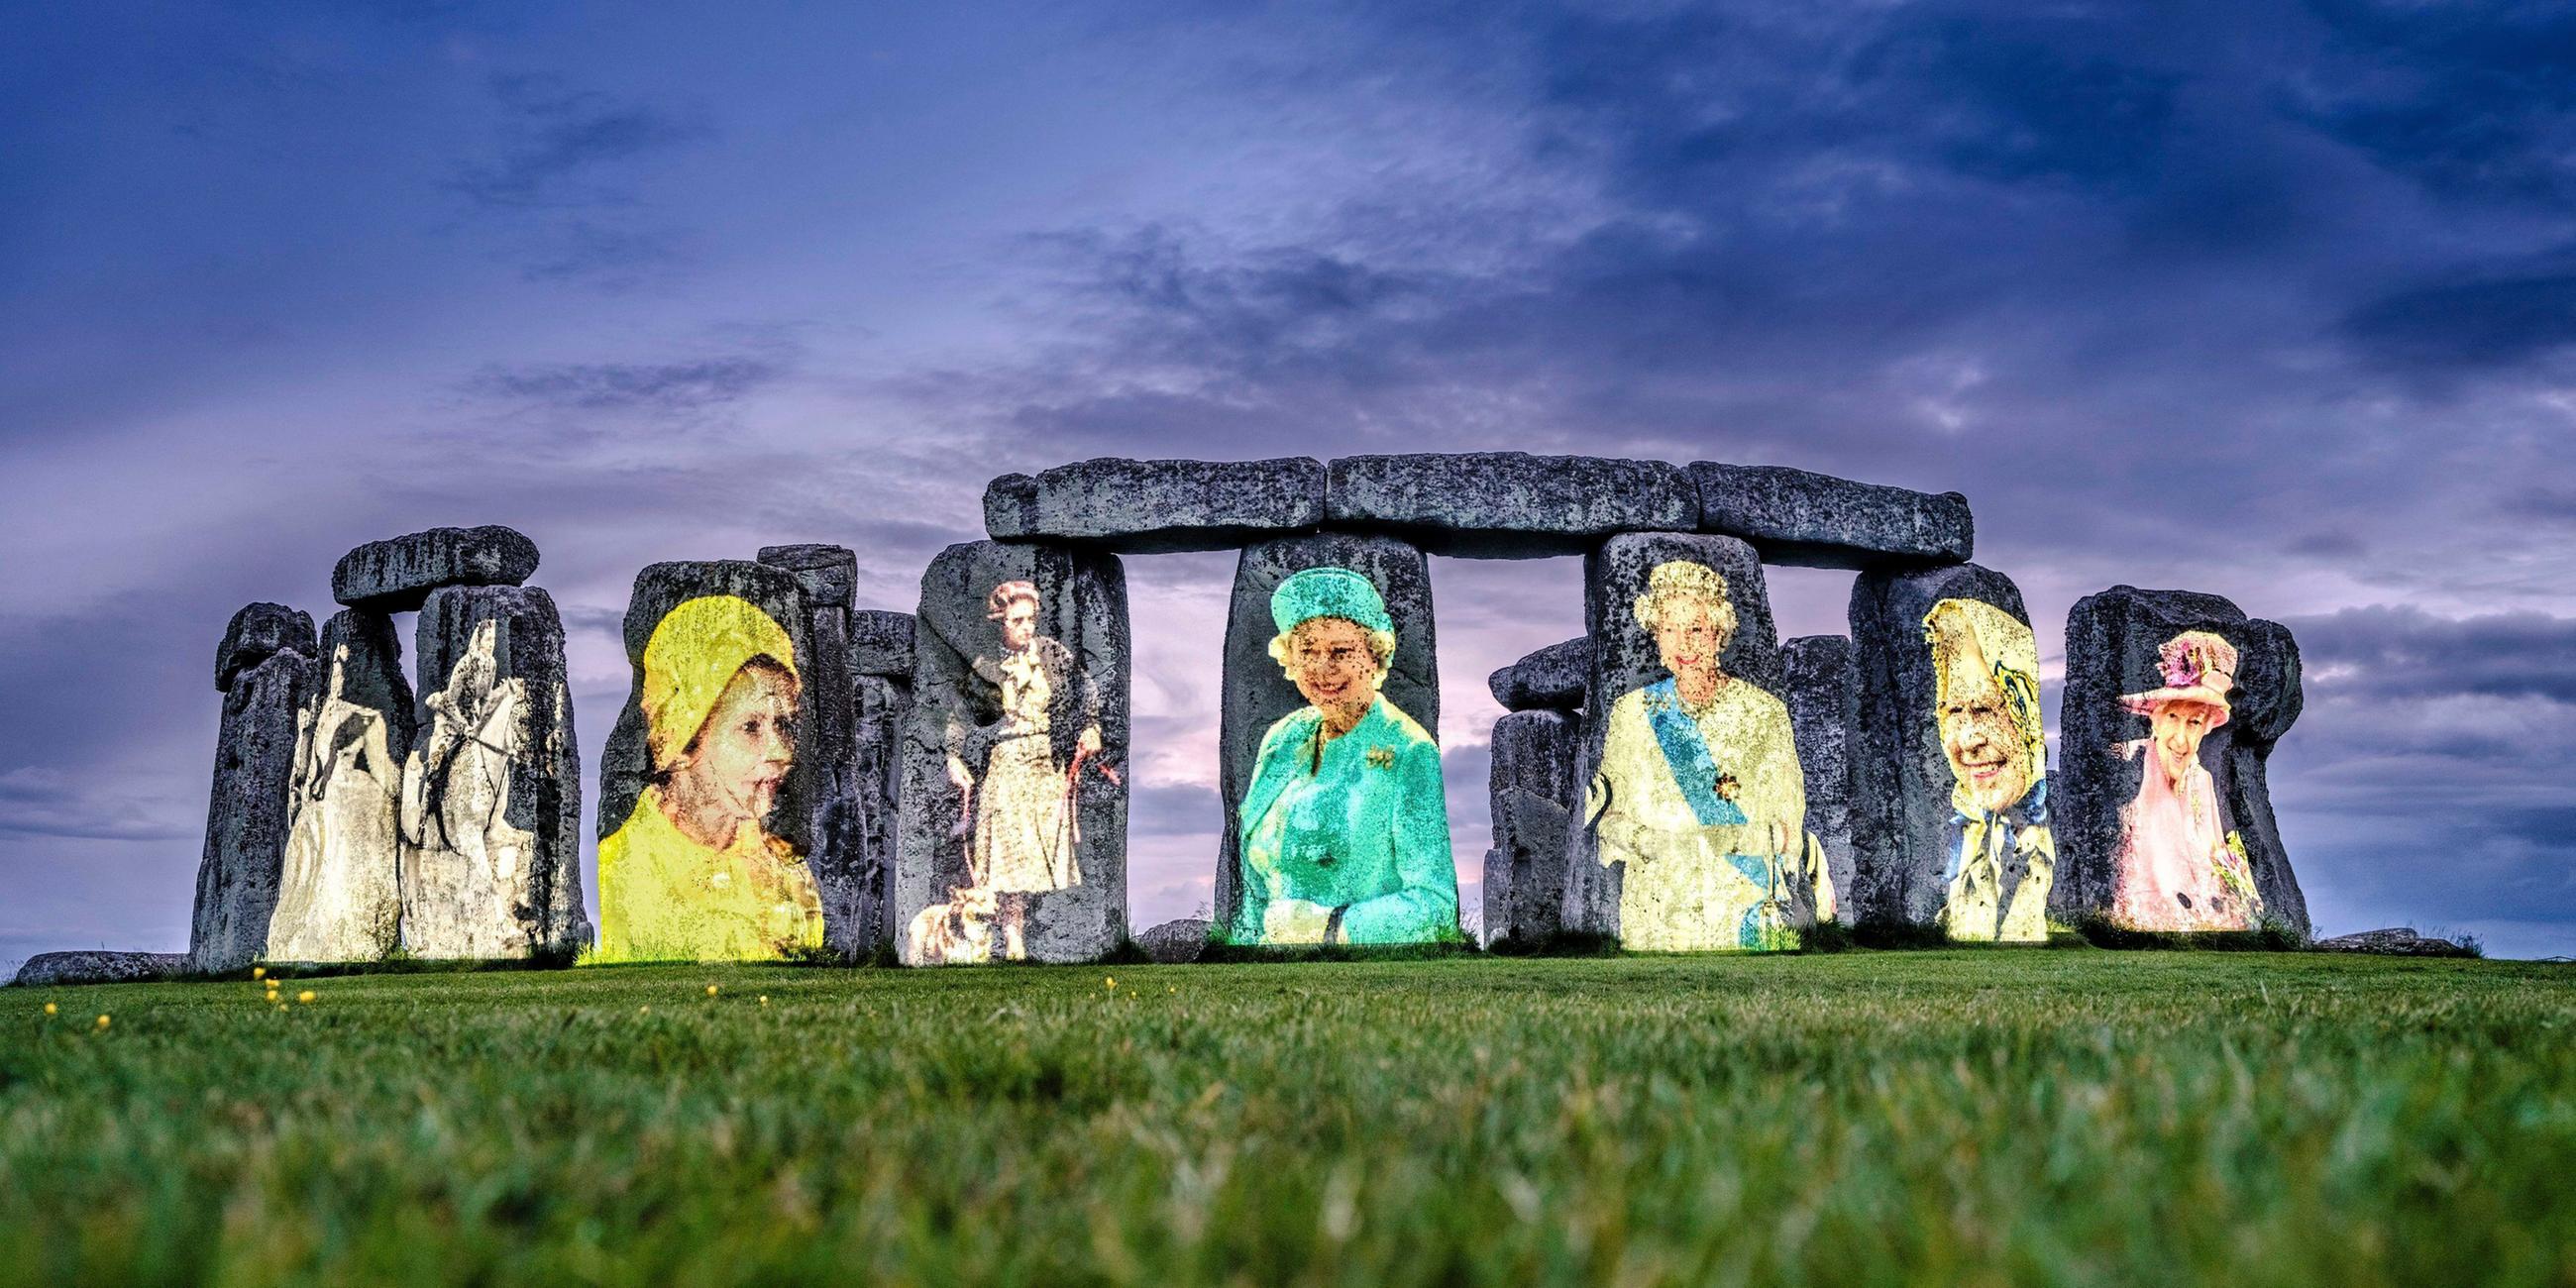 Bilder von Queen Elizabeth II. wurden auf den weltbekannten Steinkreis Stonhenge projiziert.